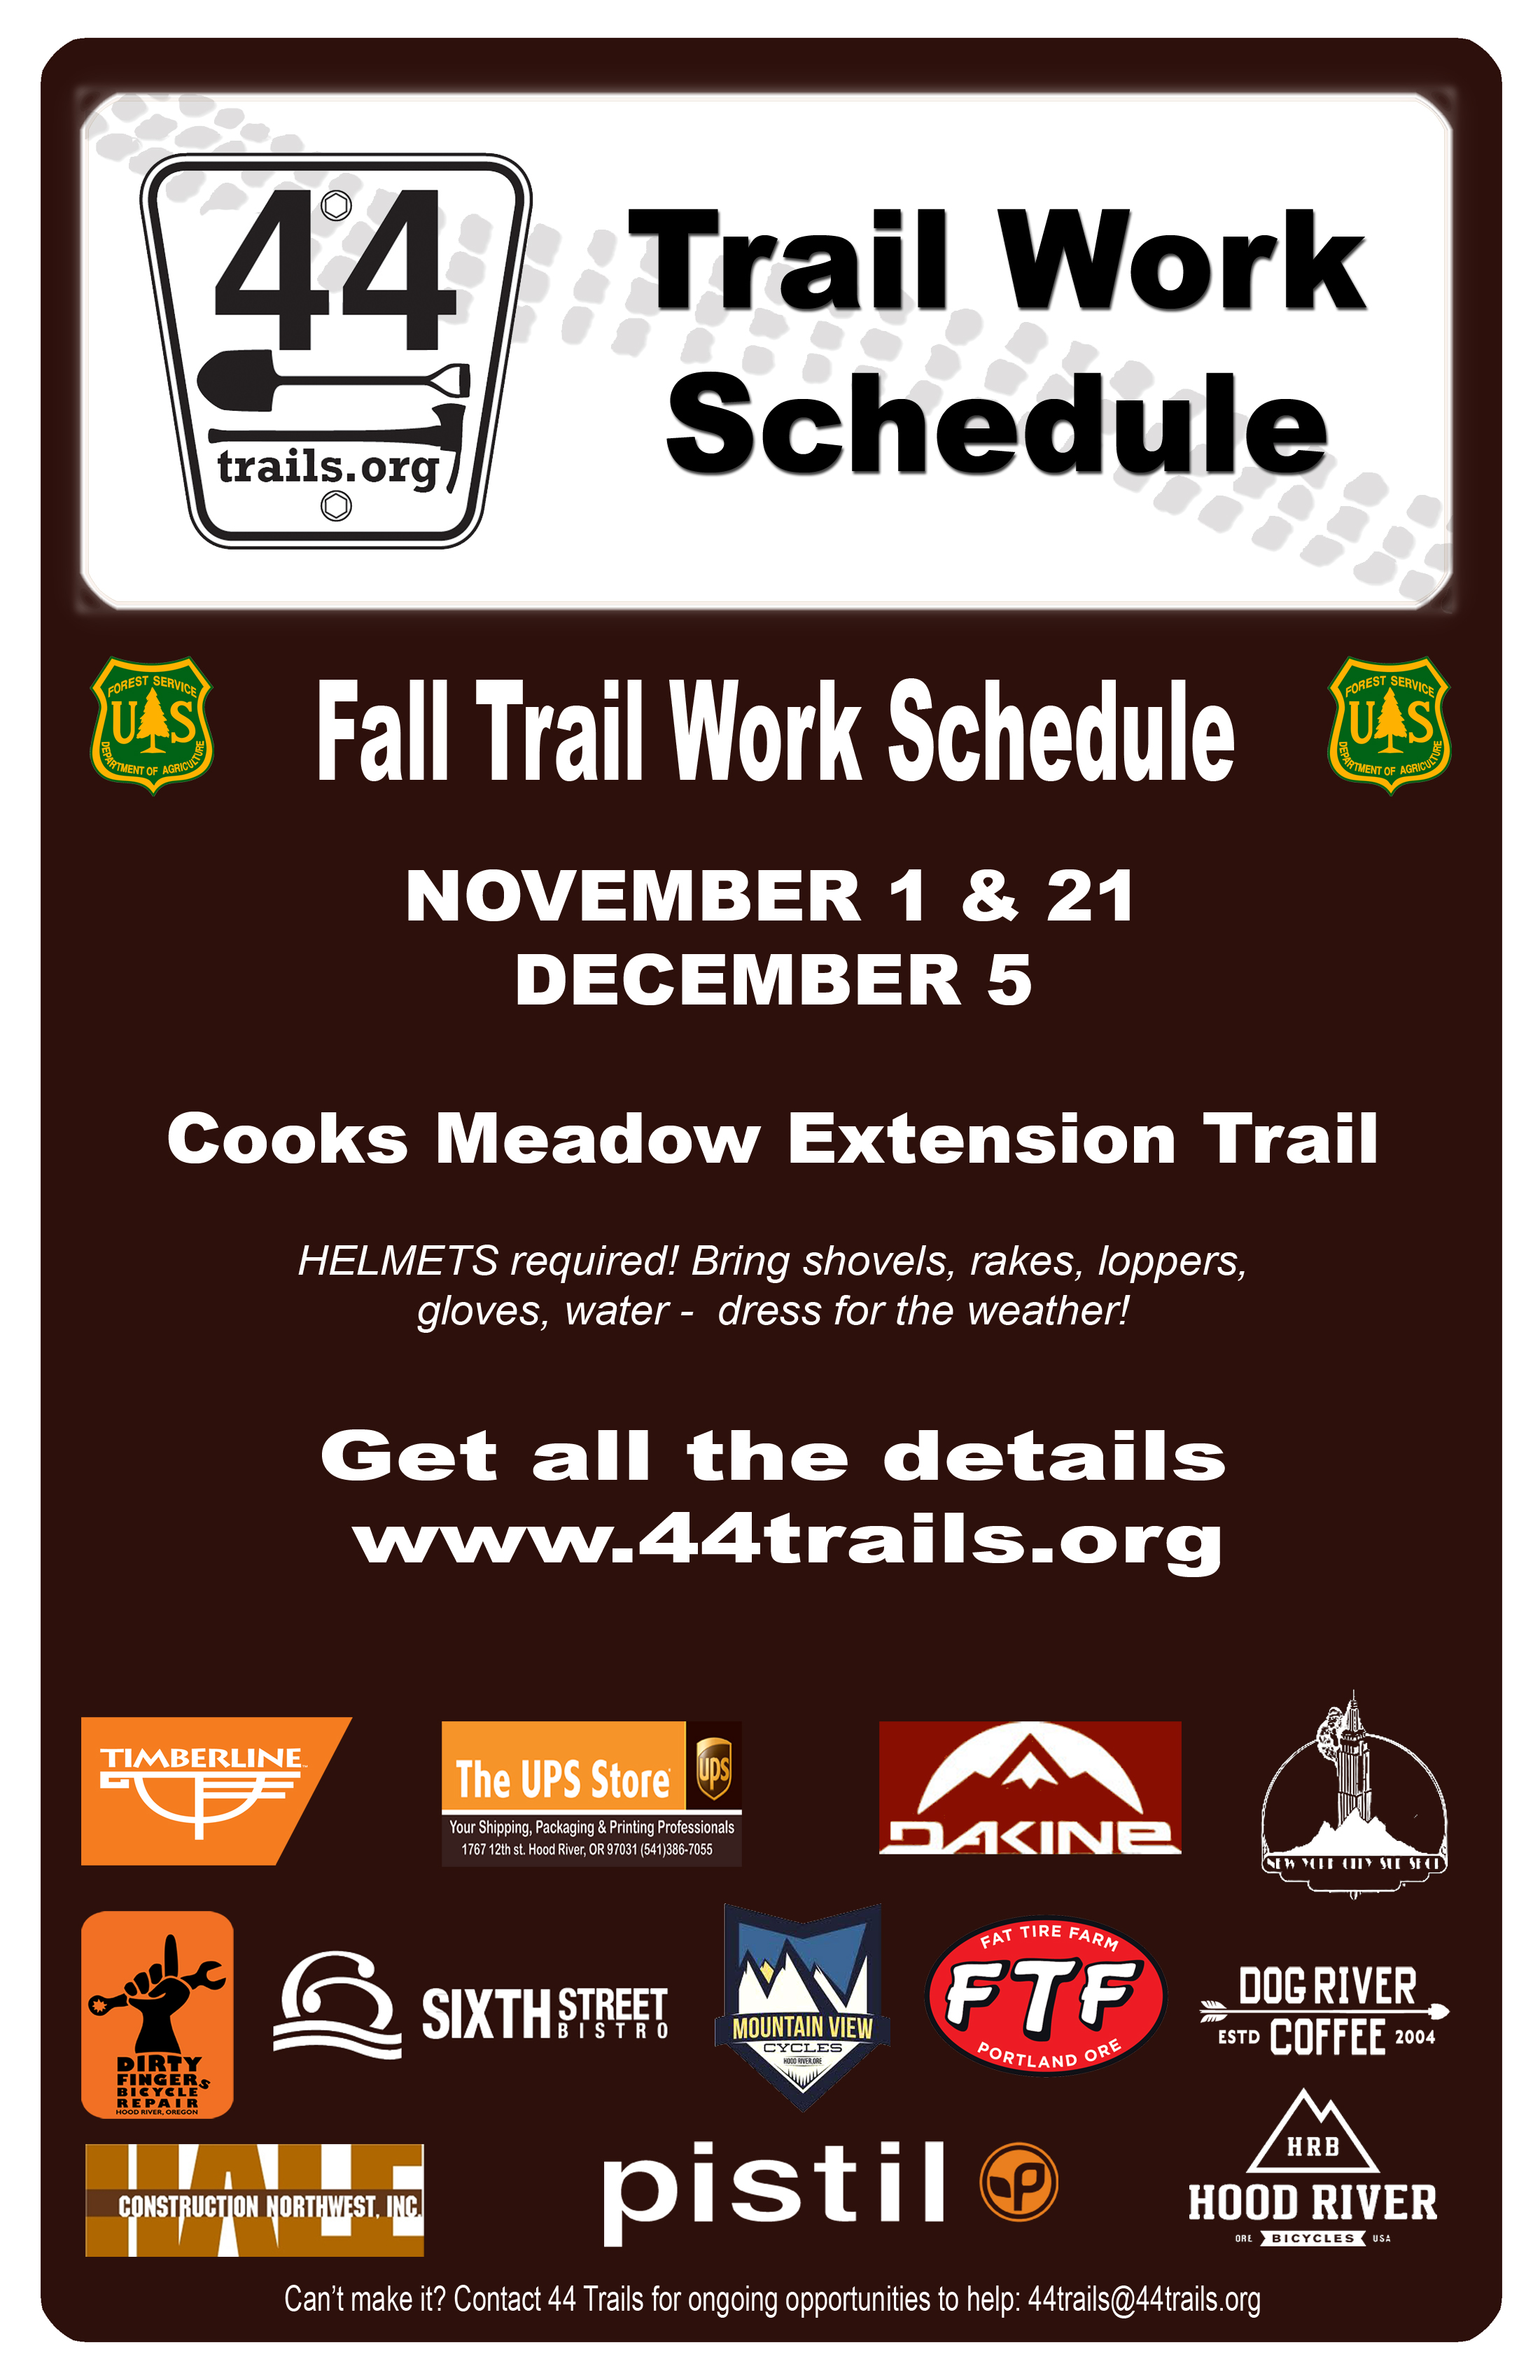 2015 trail work schedule